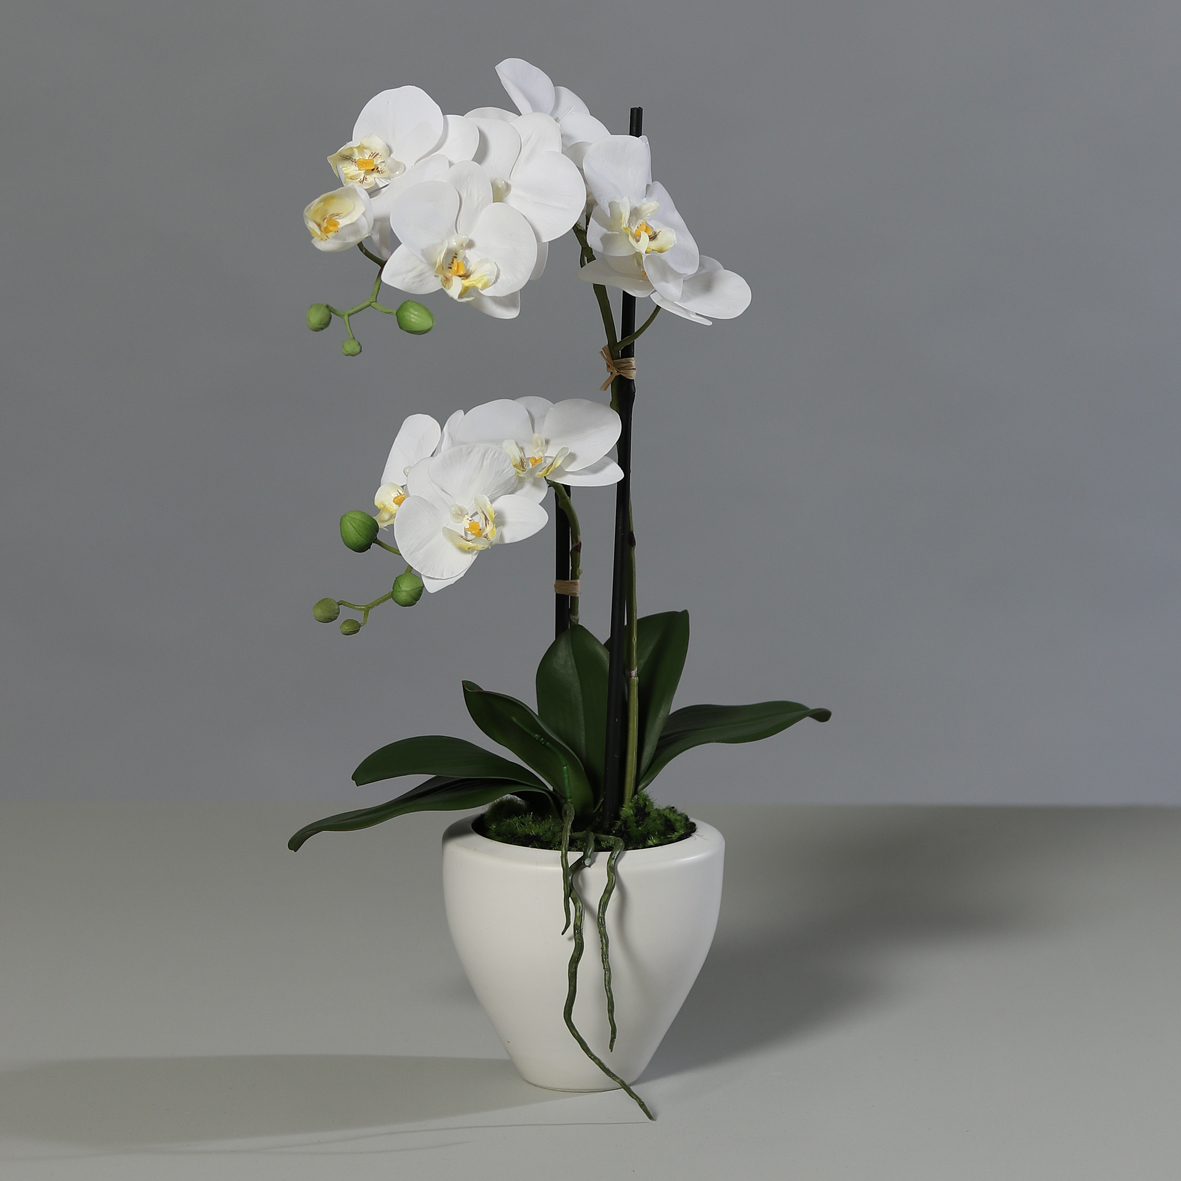 Orchidee Real Touch 62cm weiß im weißen Keramiktopf DP Kunstblumen künstliche Blumen